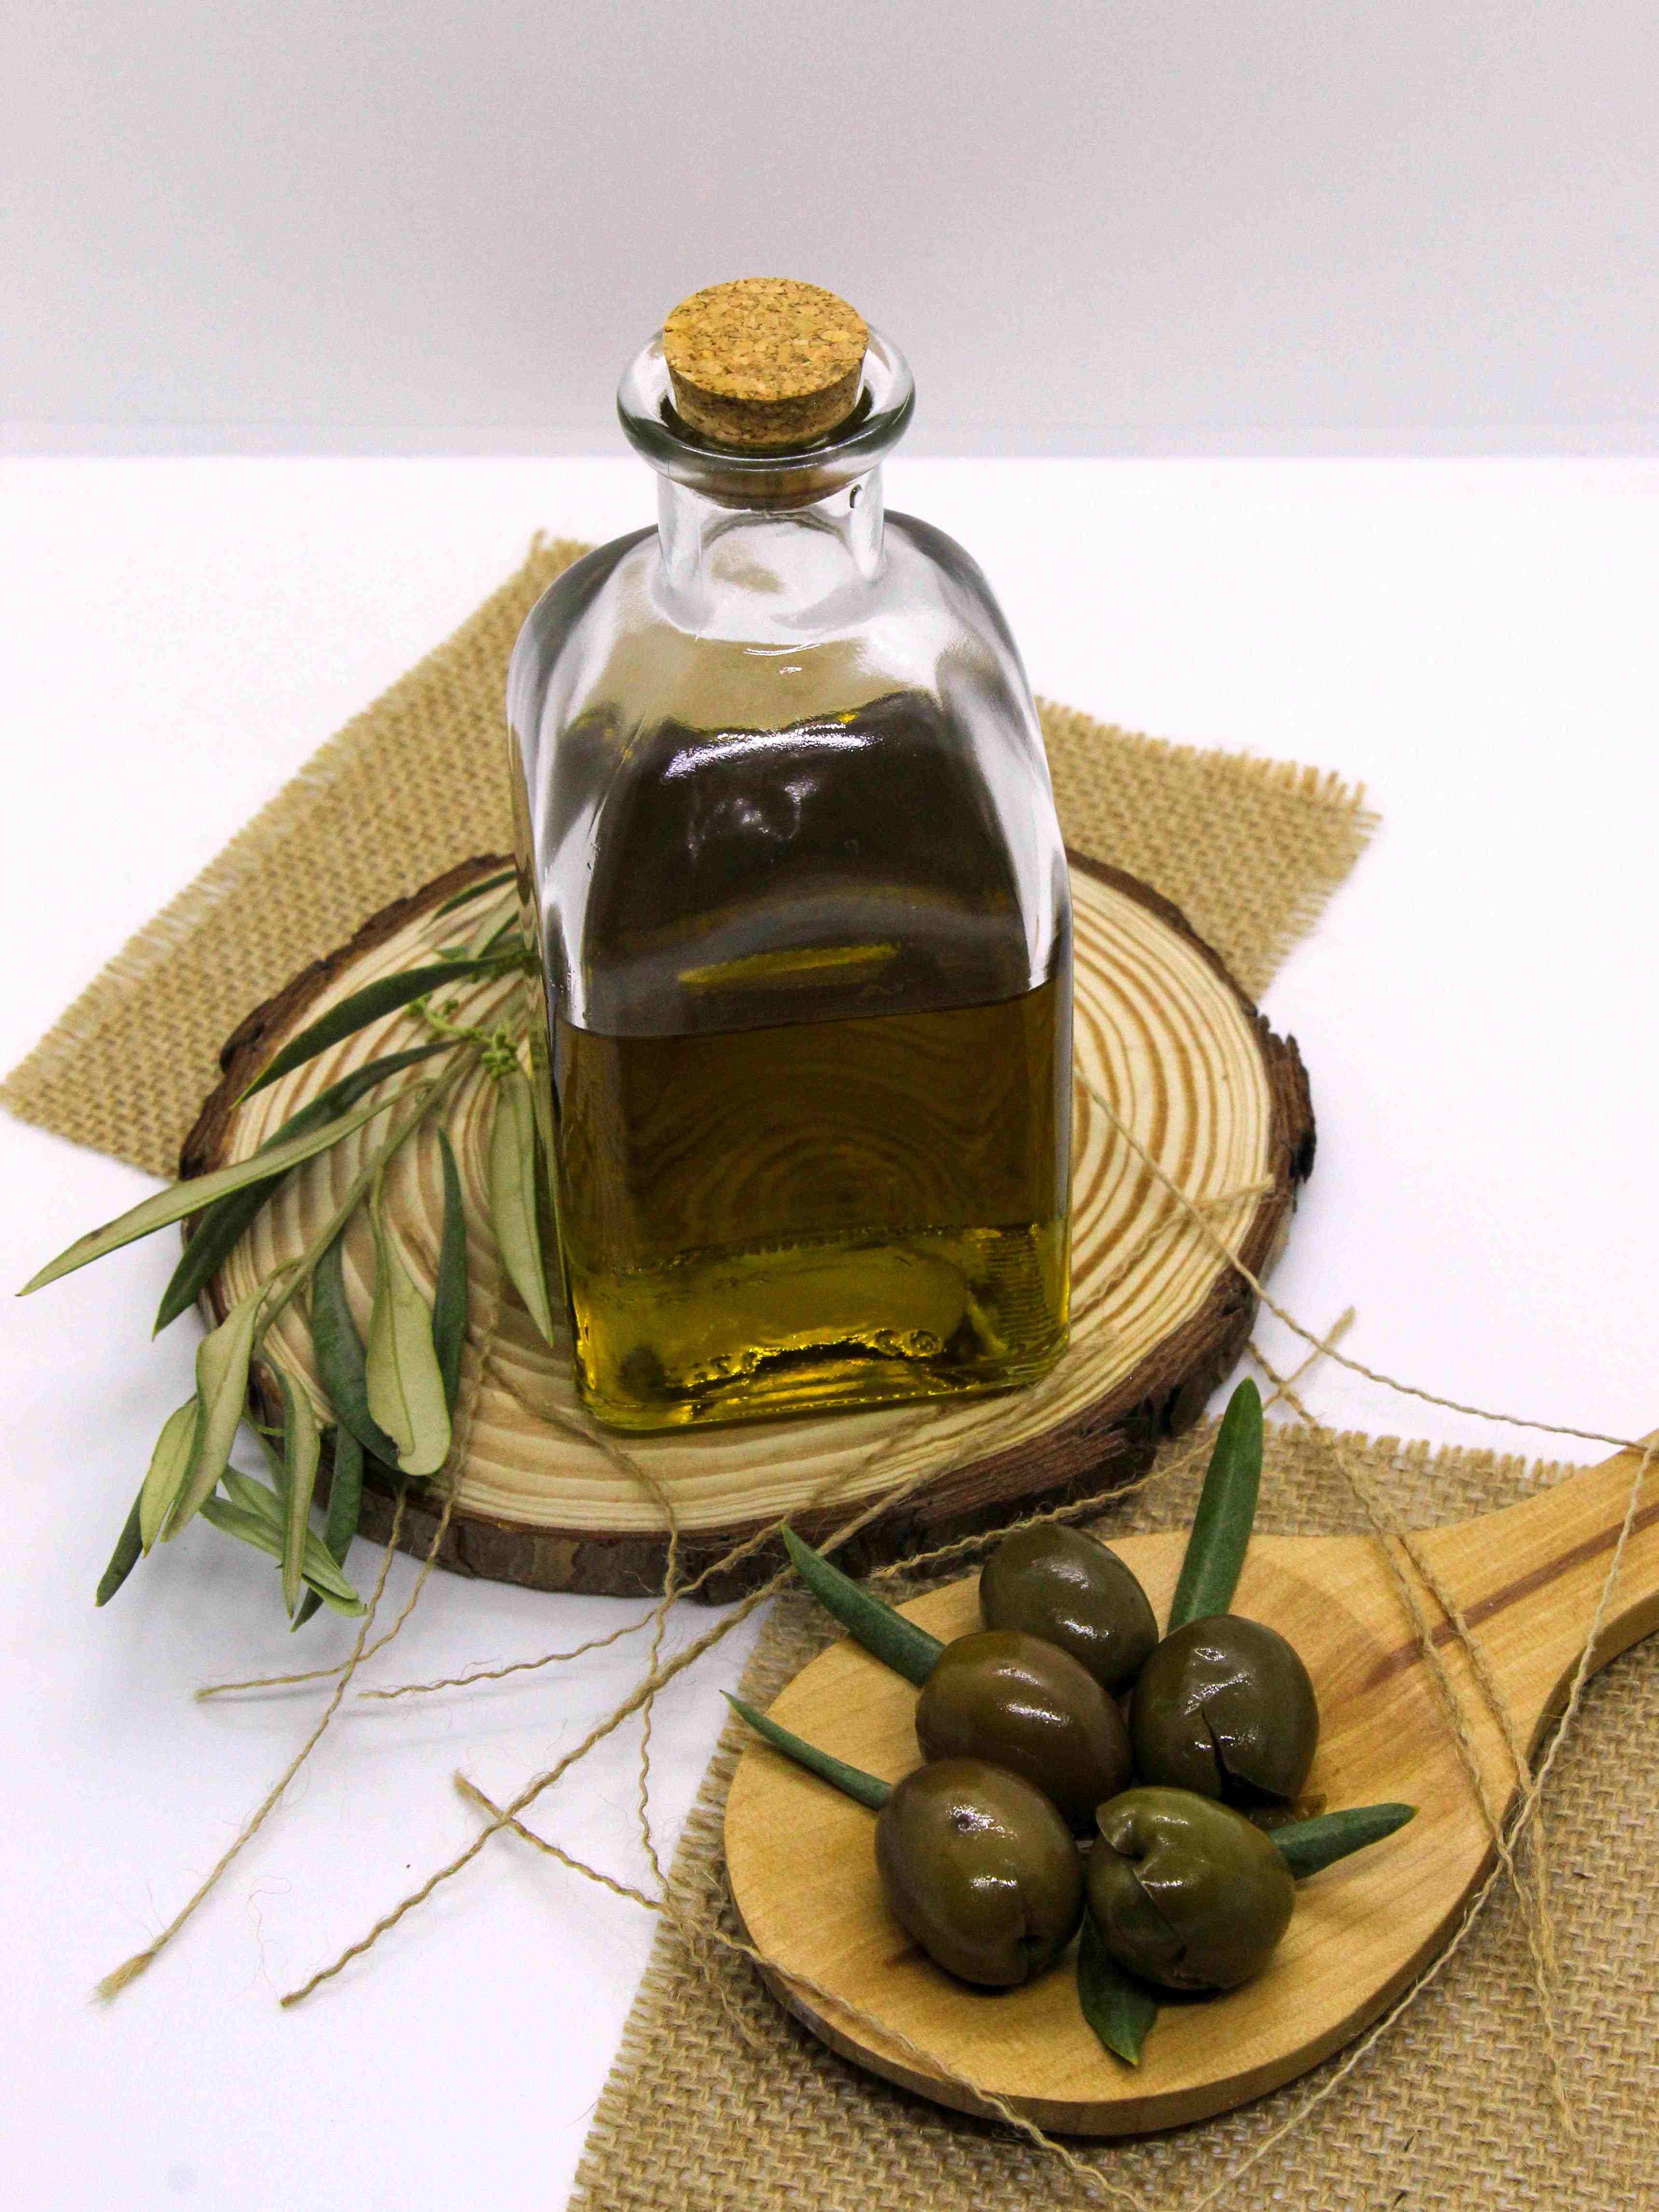 Oli d'oliva verge extra: a Espanya costa 8,7 euros el litre i a Portugal 6,8 euros